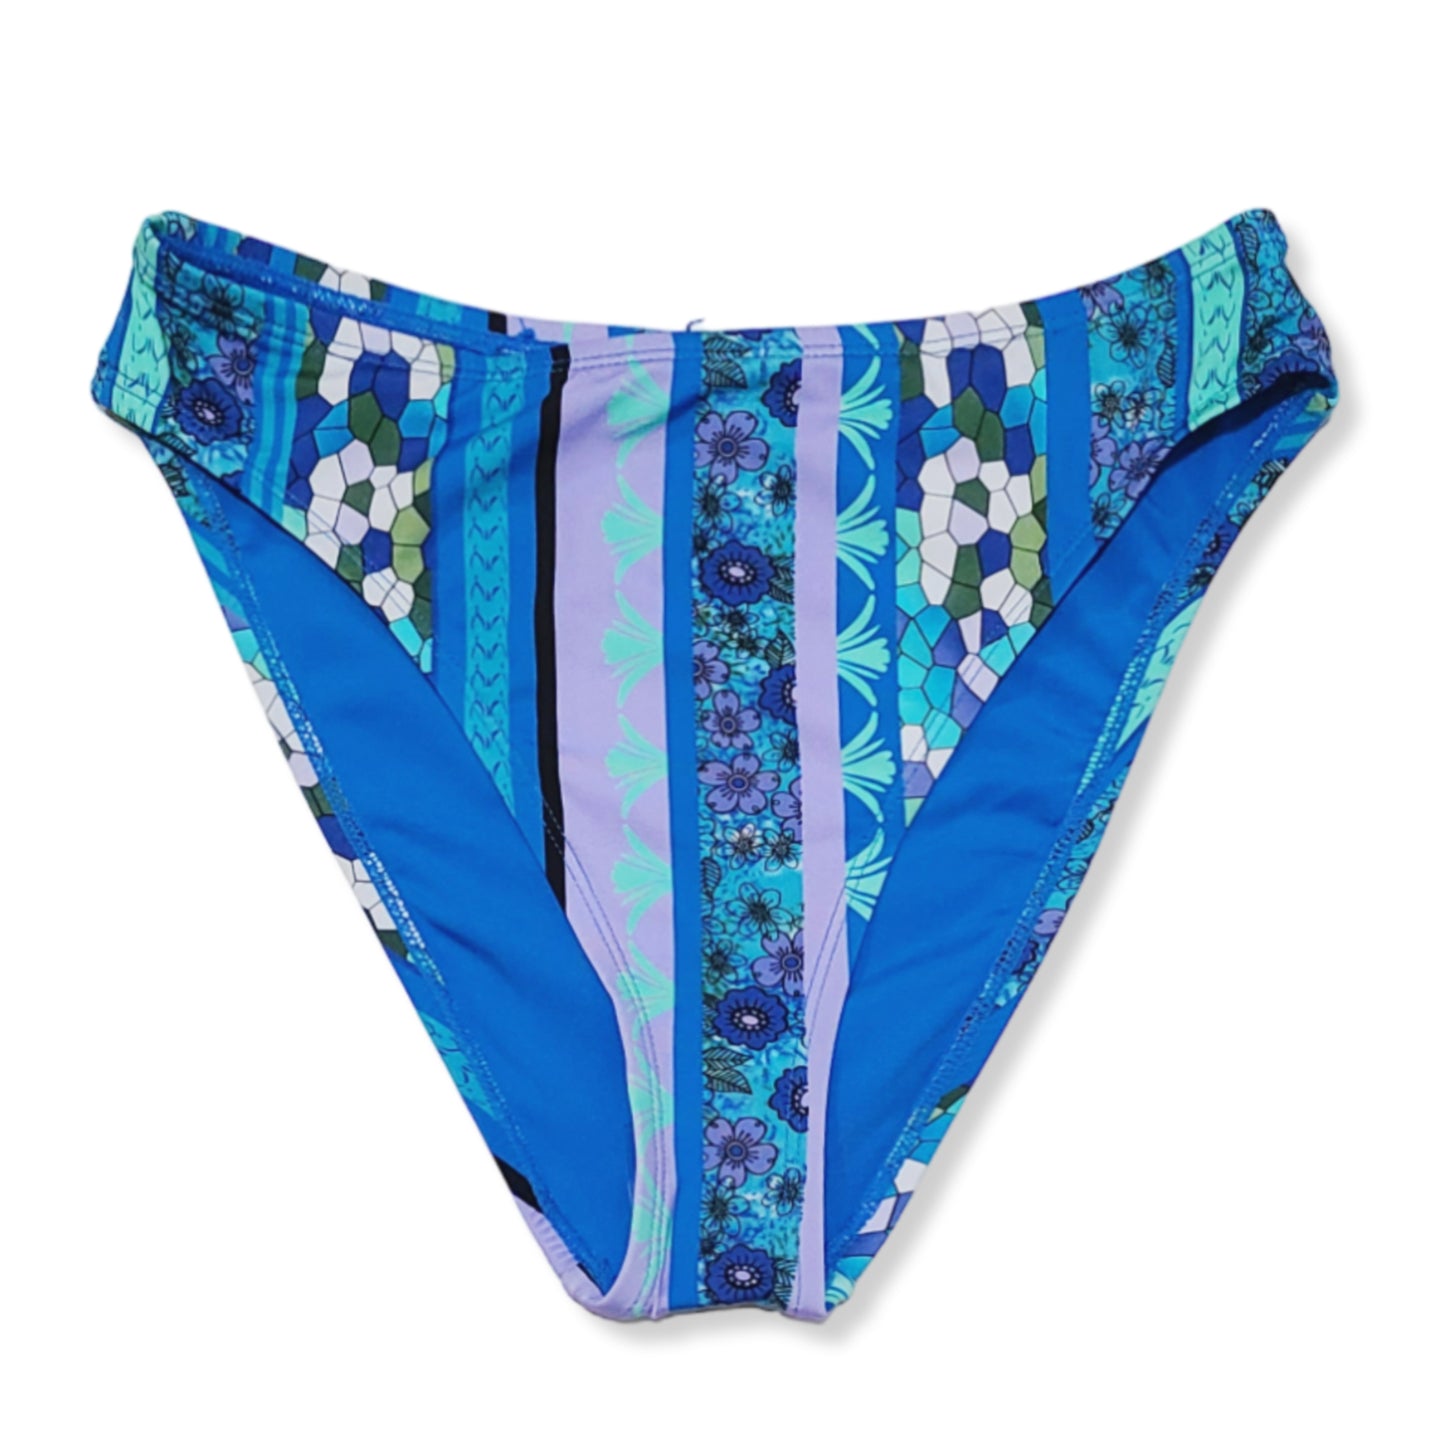 Lucky Brand Floral Print Swim Bikini Top and Bottom Collection